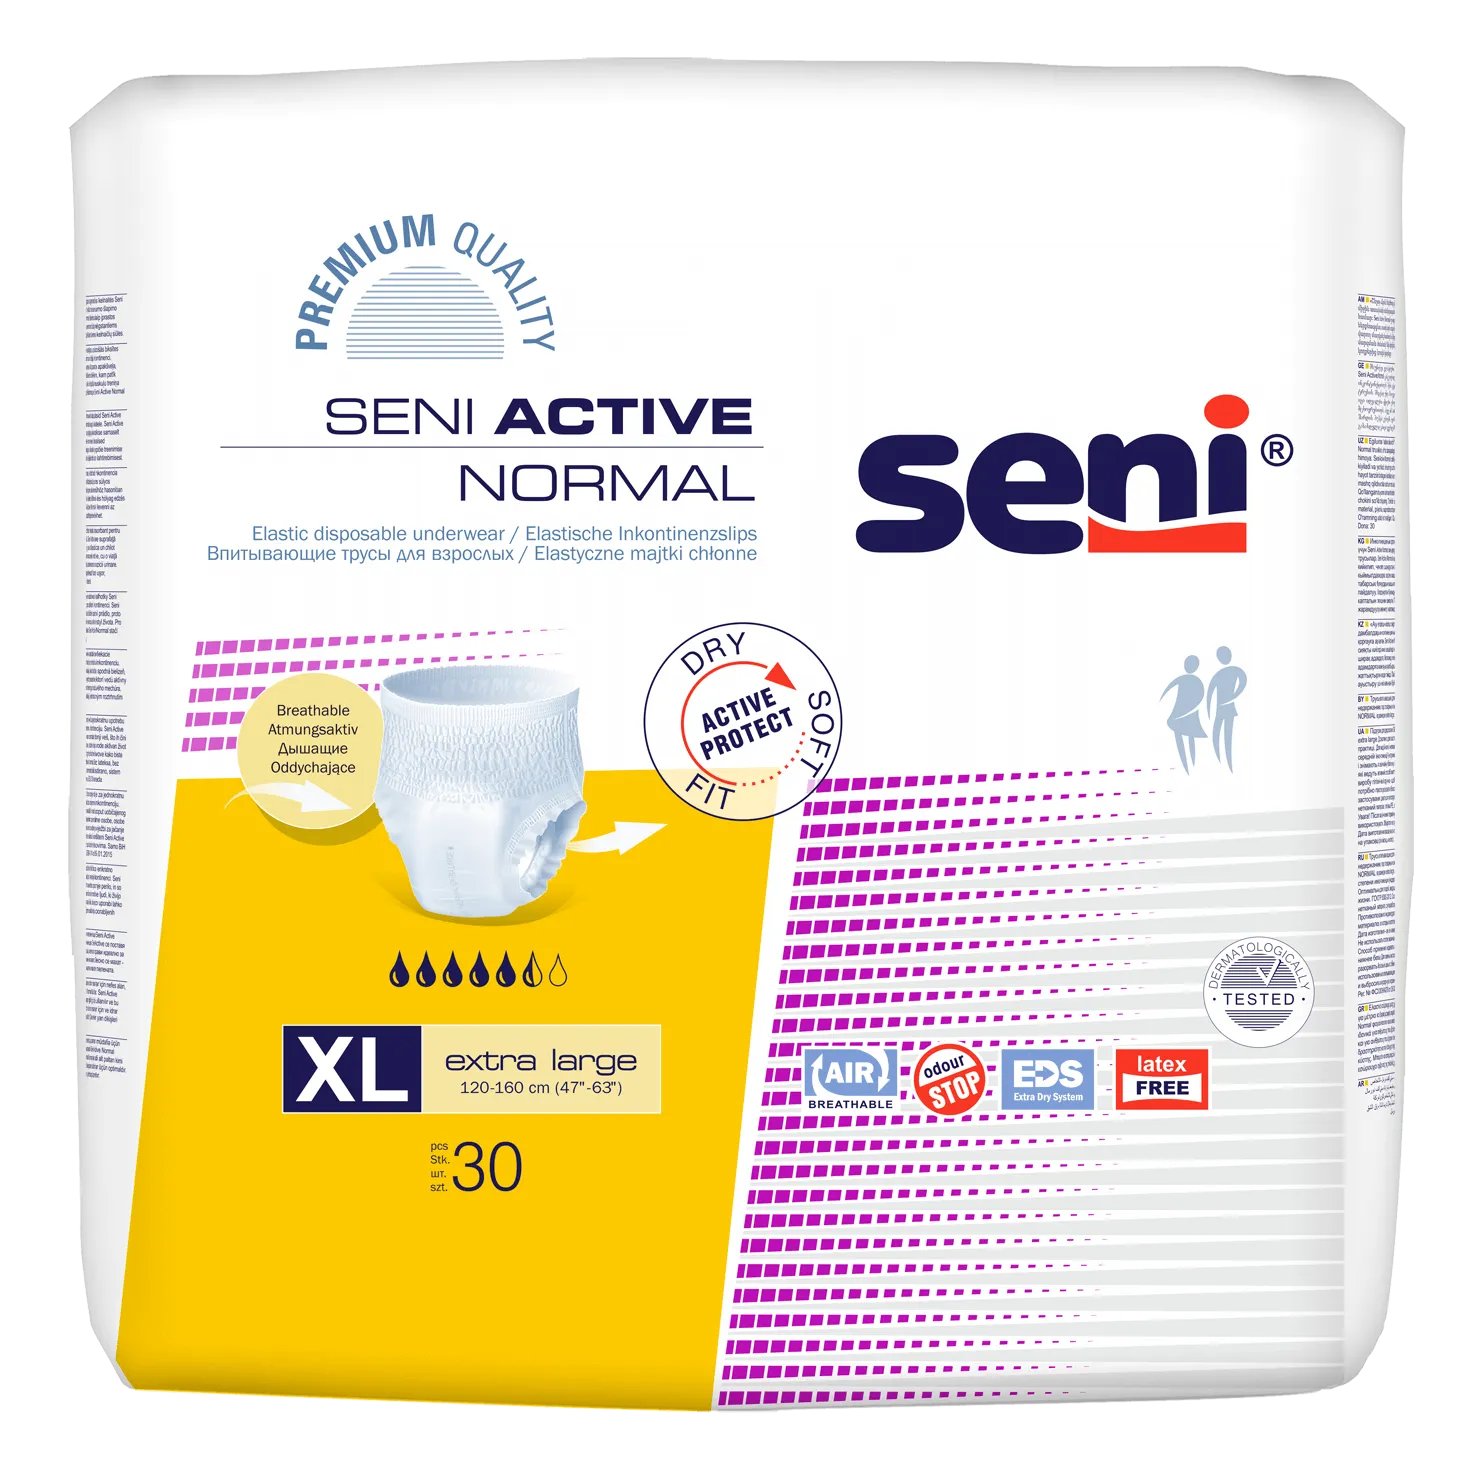 Seni Active Normal, elastyczne majtki chłonne, extra large 120-160 cm, 30 sztuk